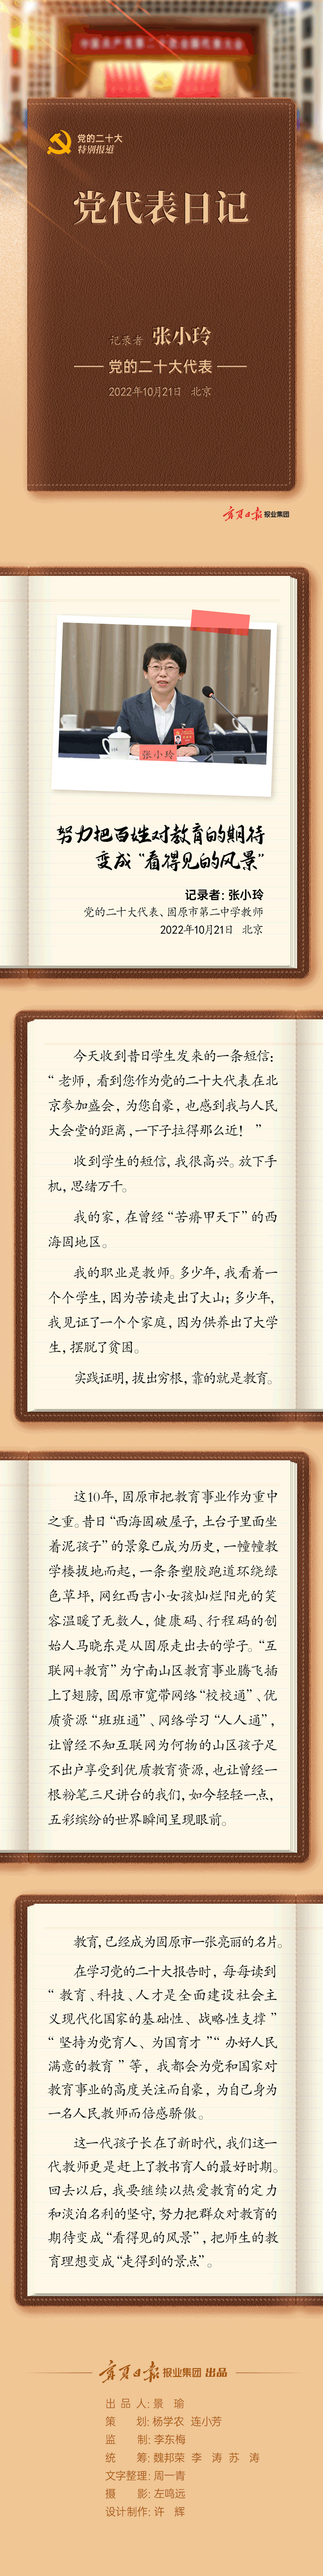 党代表日记-张小玲-静态版.png